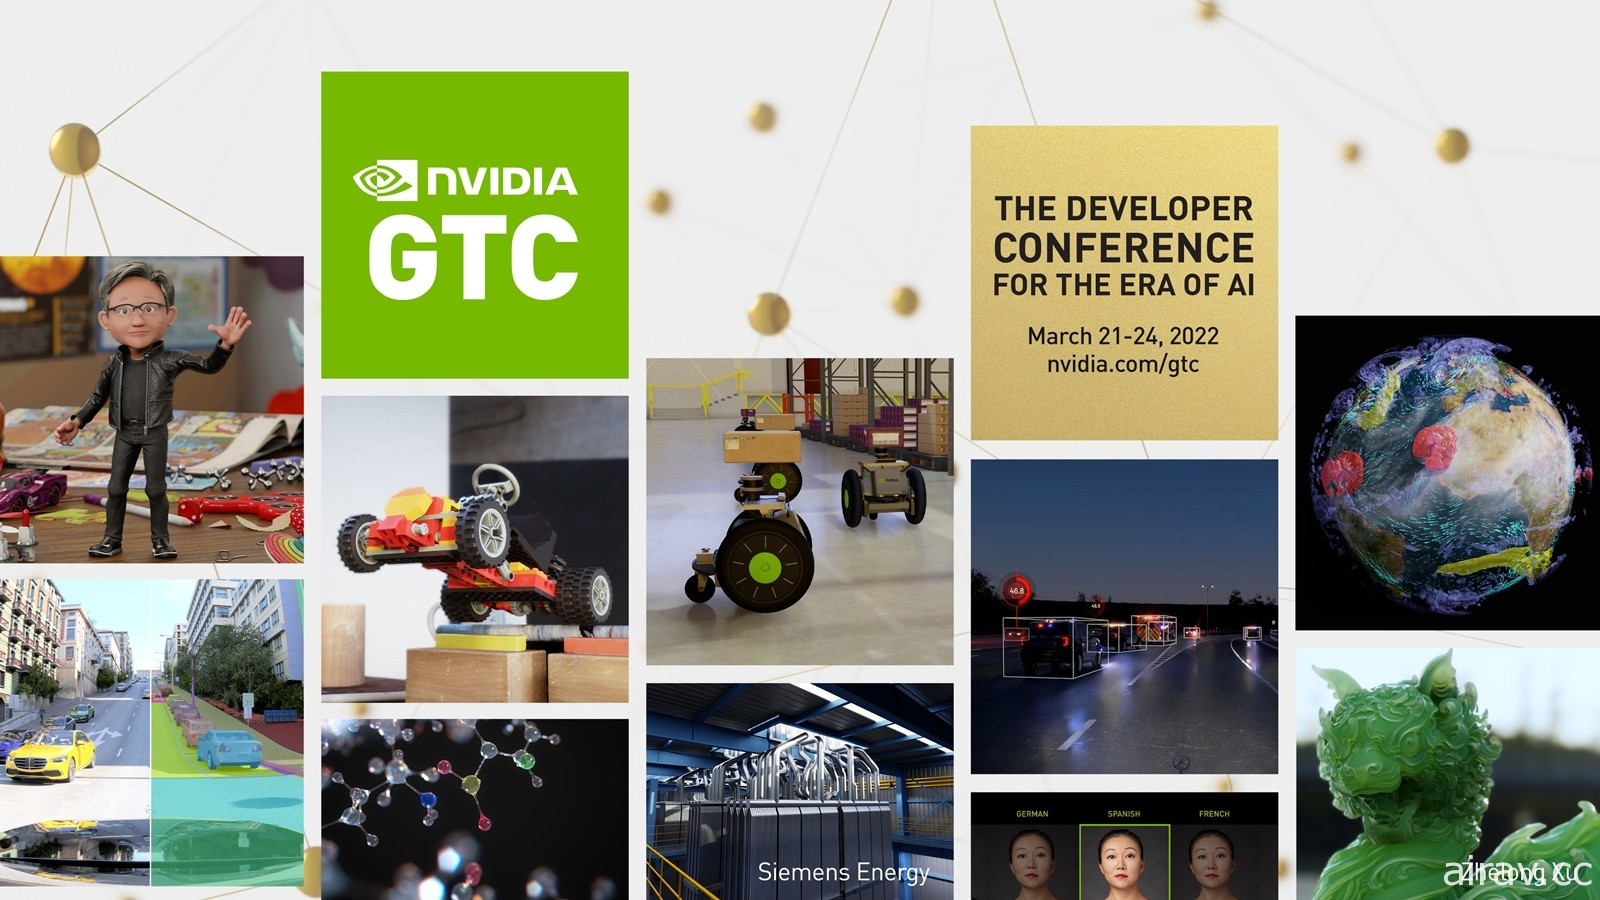 NVIDIA GTC 2022 將於 3 月下旬登場 執行長黃仁勳將發表主題演講及全新產品